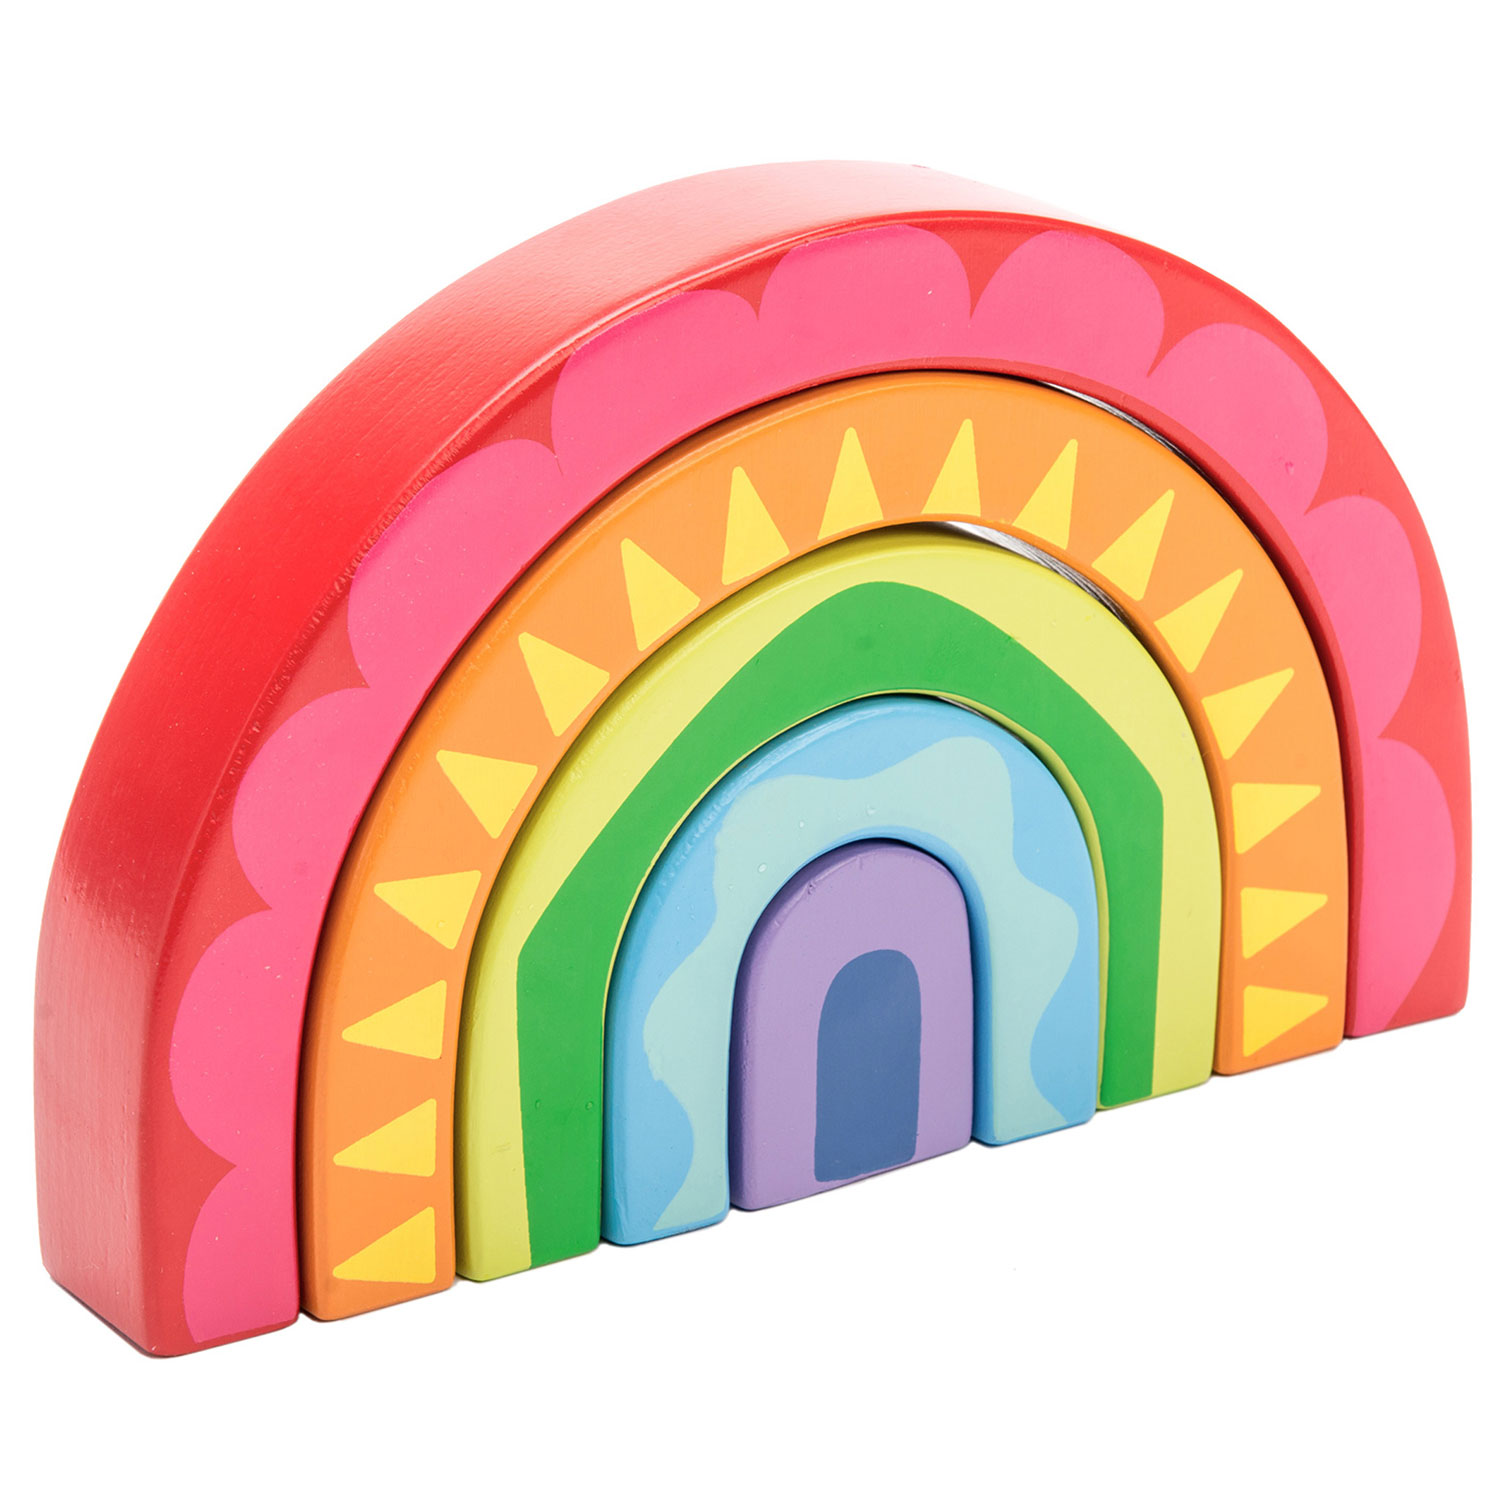 Regenbogen Tunnel Spielzeug / Rainbow Tunnel Toy